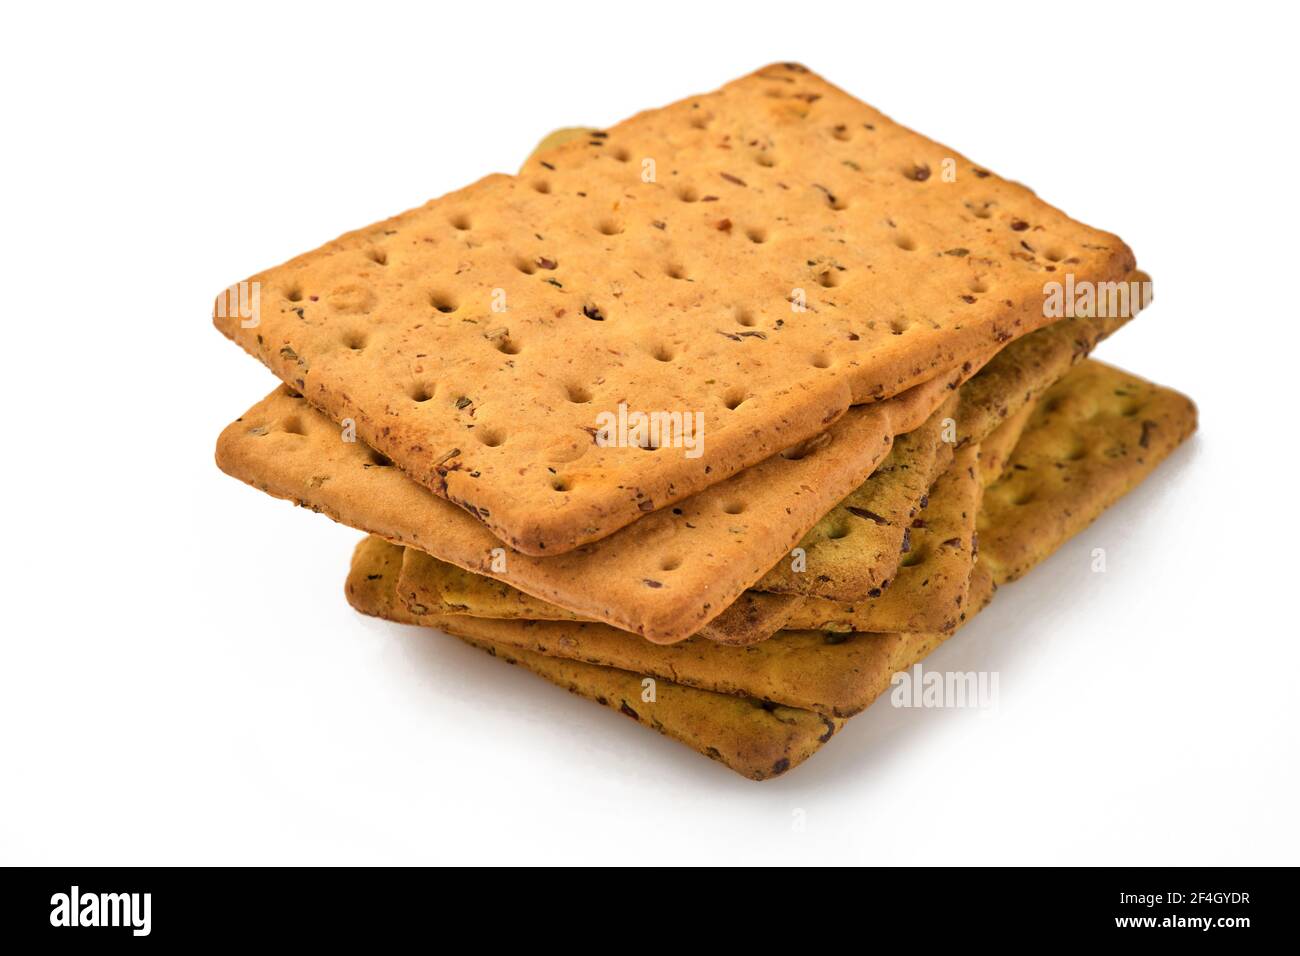 Cracker con semi di lino e crusca di avena forma rettangolare per una dieta sana, dietetica ed equilibrata isolata su sfondo bianco. Snack per una corretta alimentazione Foto Stock